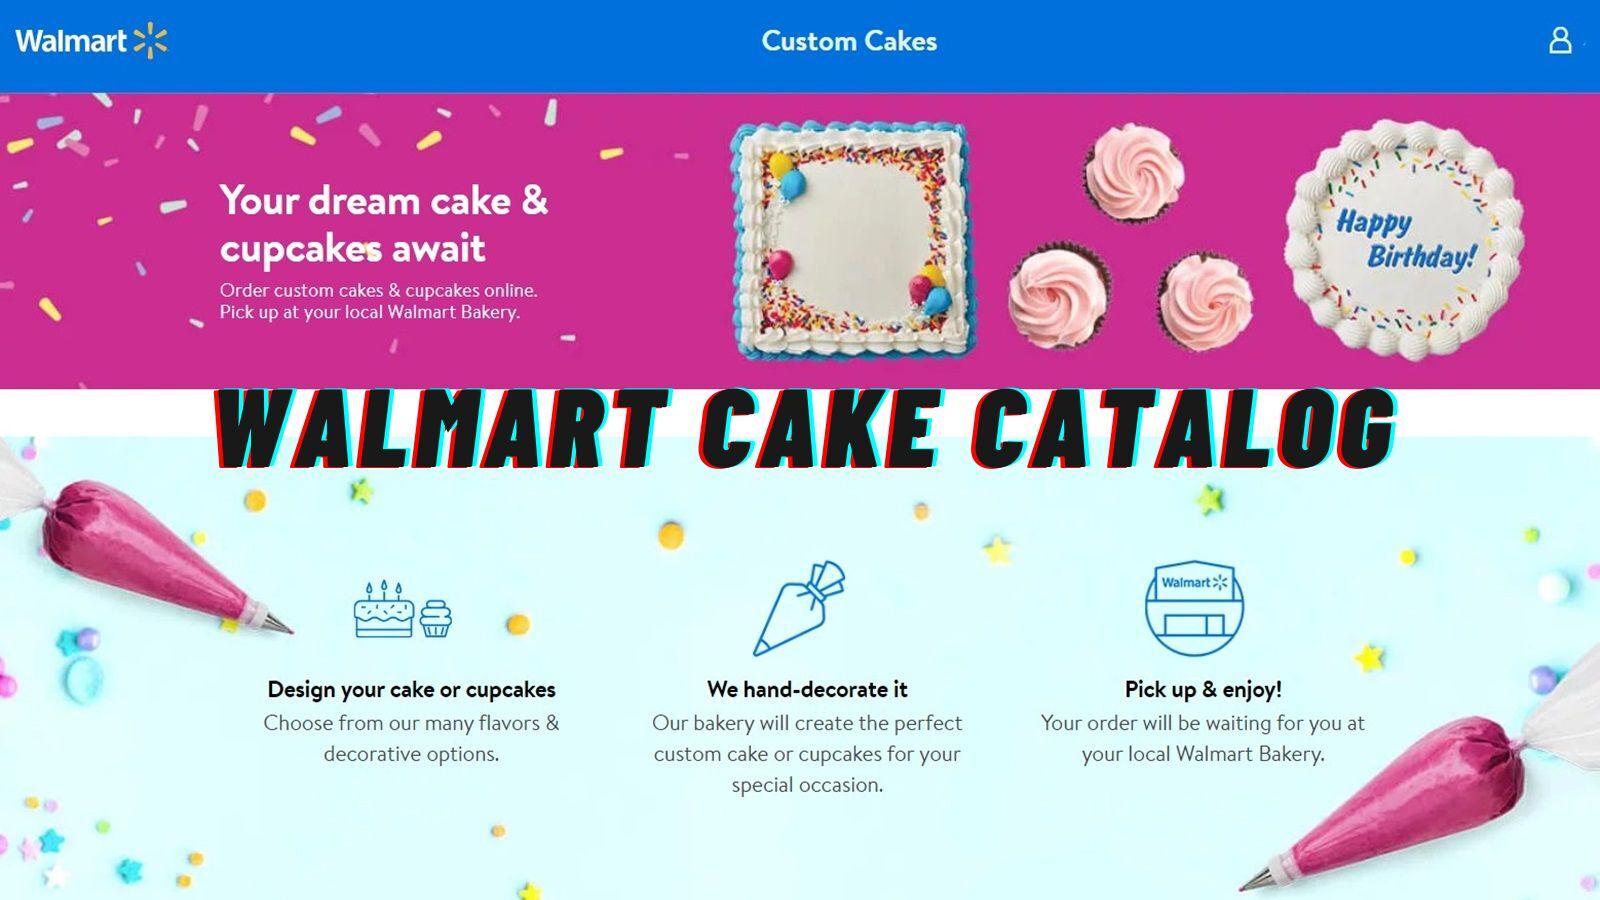 Walmart Cake Catalog (The Full Listing!)